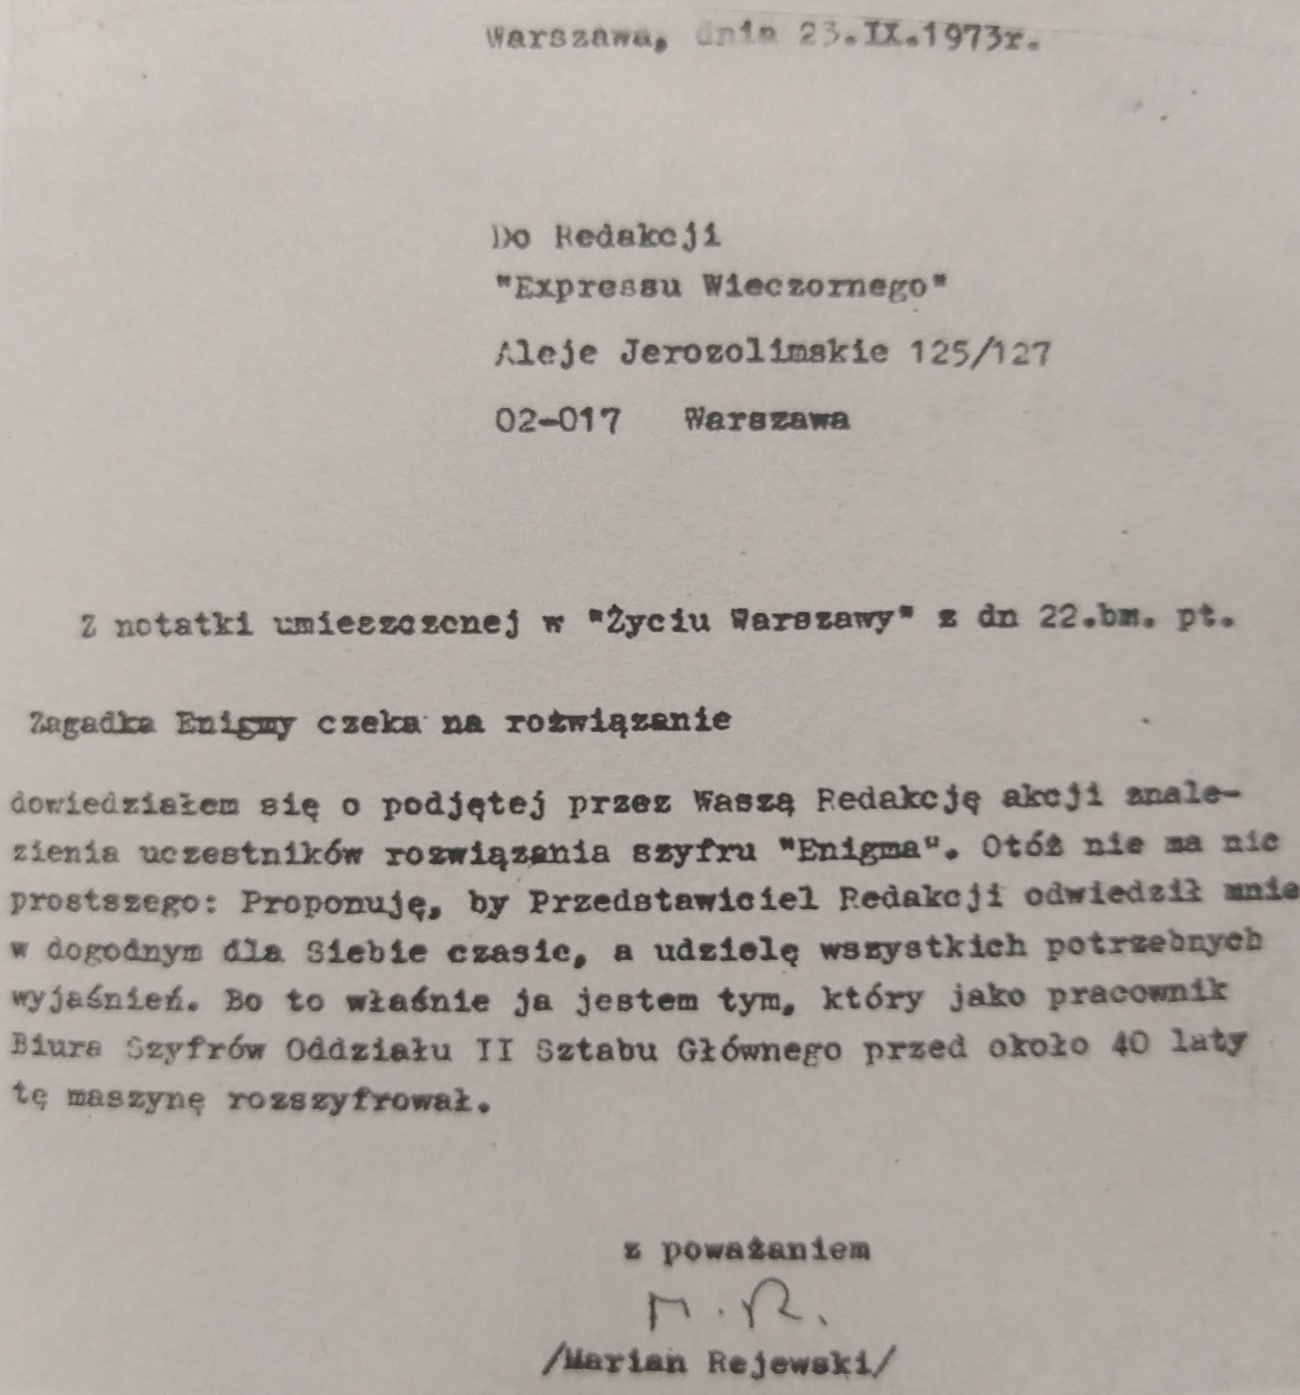 Kopia listu Mariana Rejewskiego do redakcji "Expressu Wieczornego".